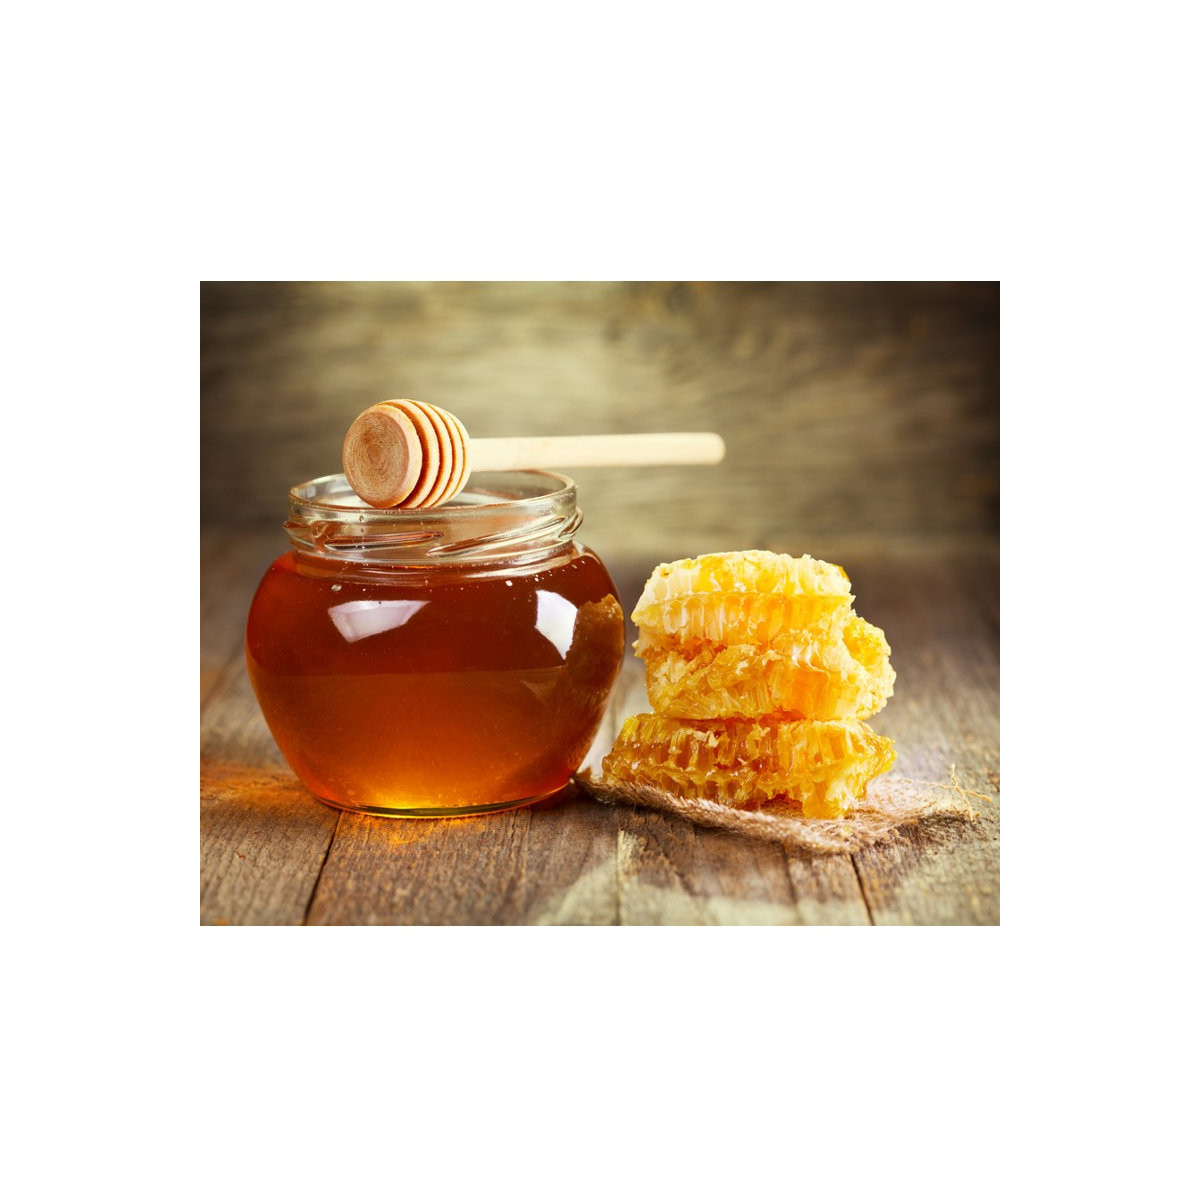 Cuillère à miel en buis – La maison de commerce LMDC